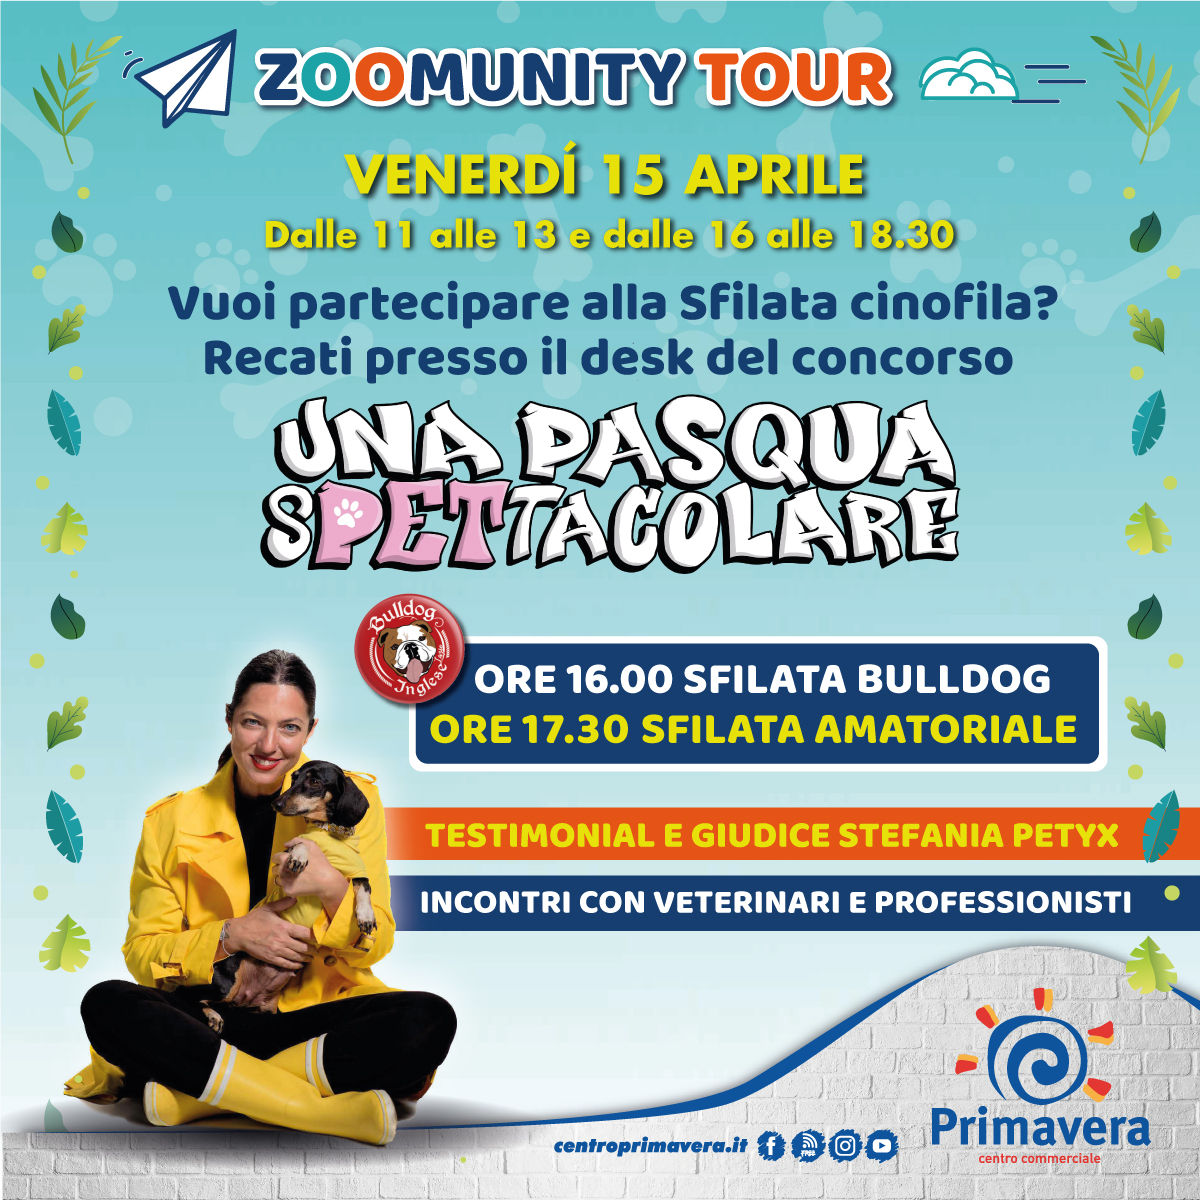 zoomunity tour eventi thekom centro commerciale primavera